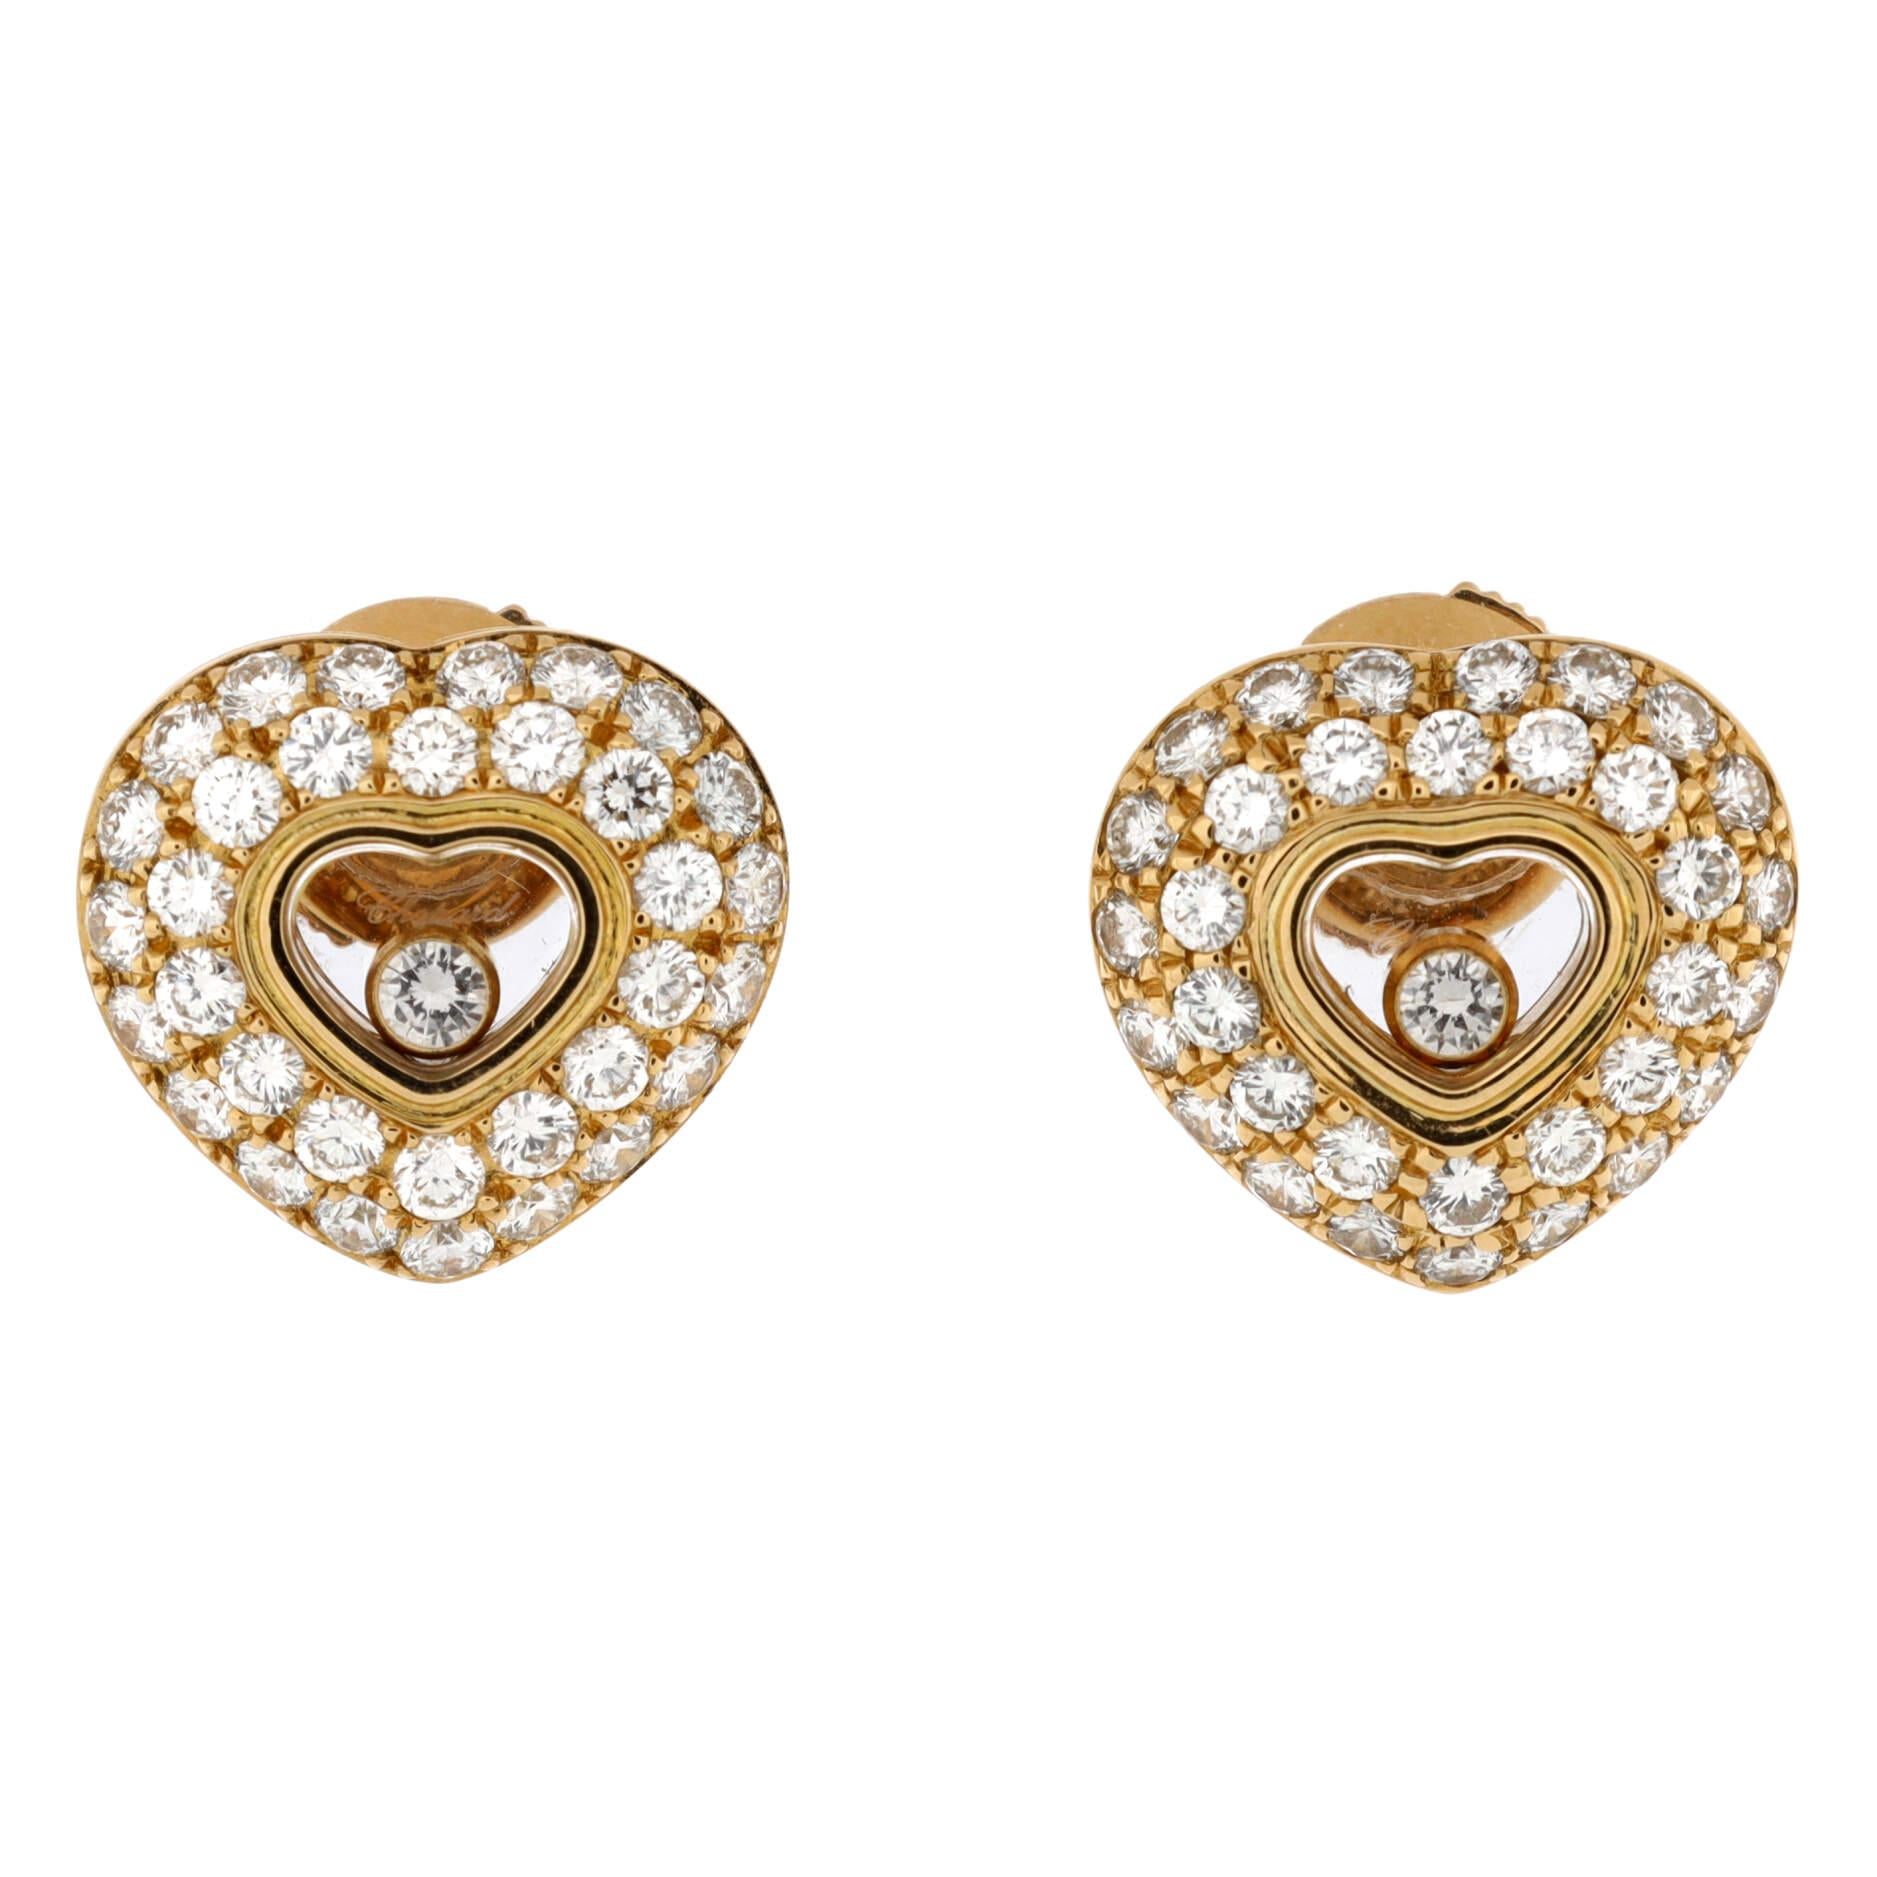 chopard heart earrings price